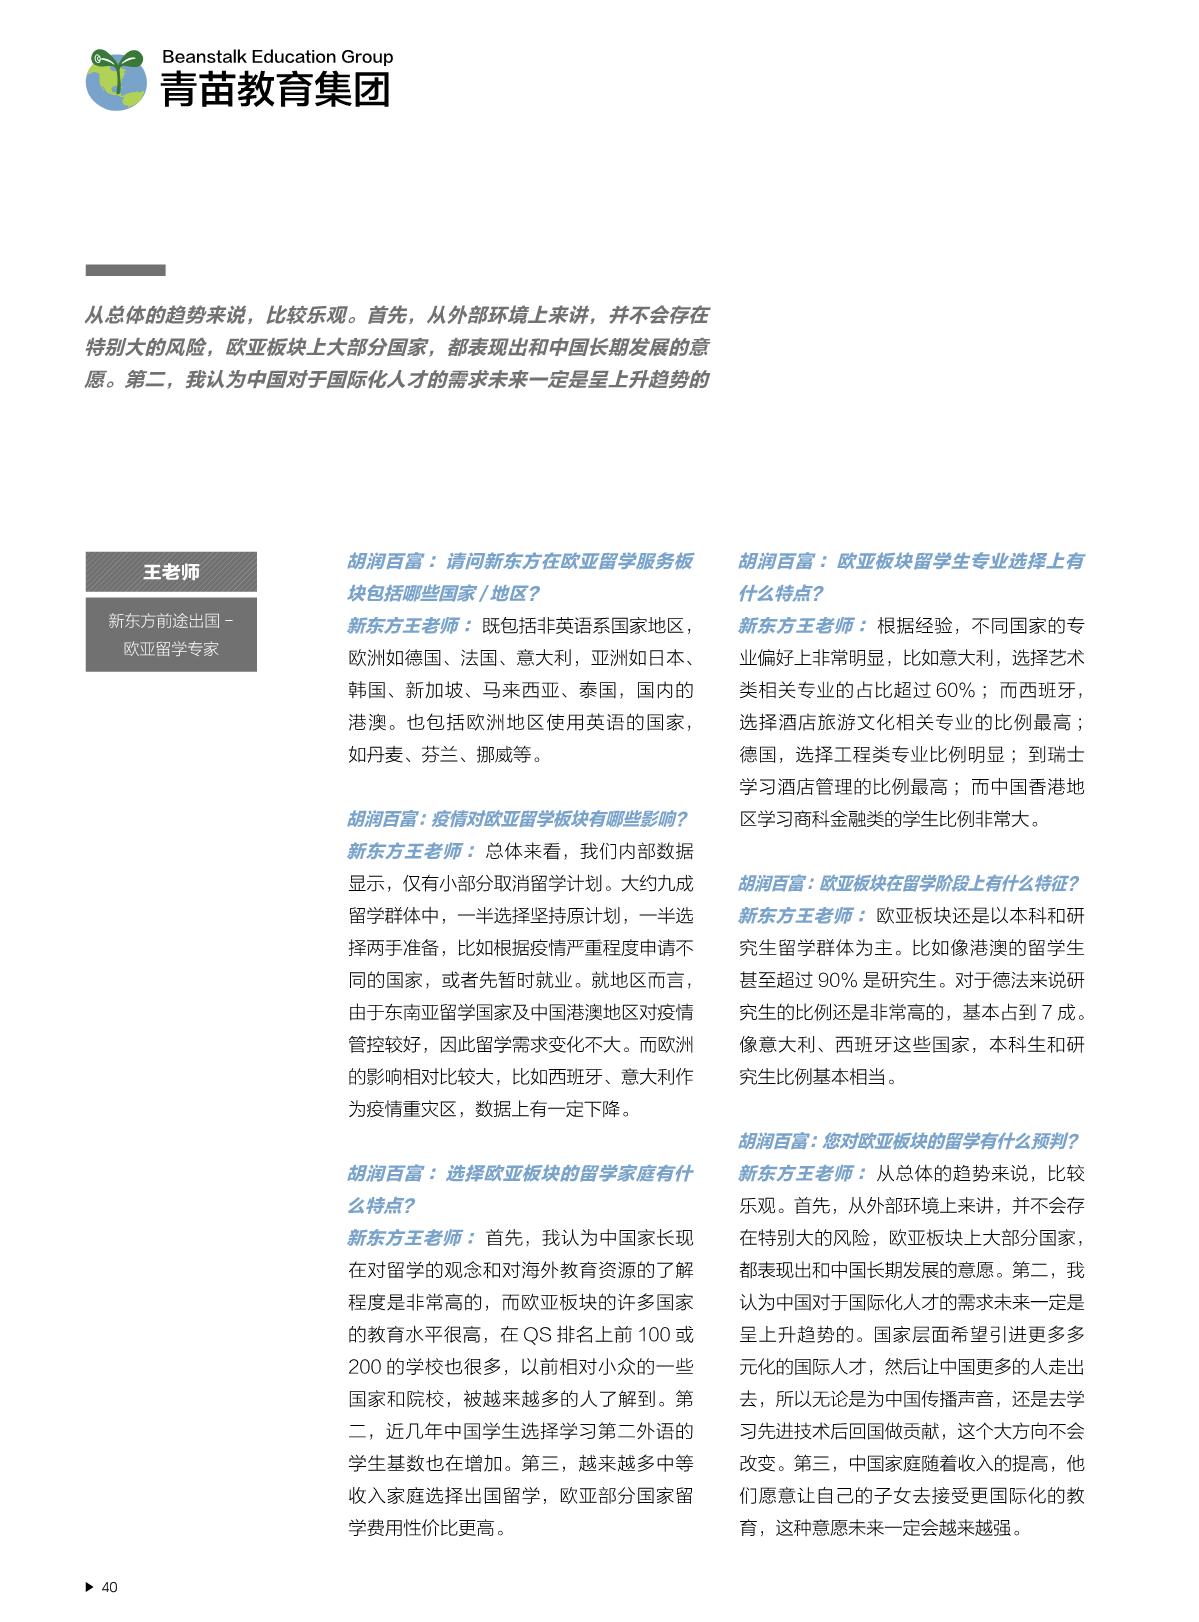 2021中国国际教育白皮书_41